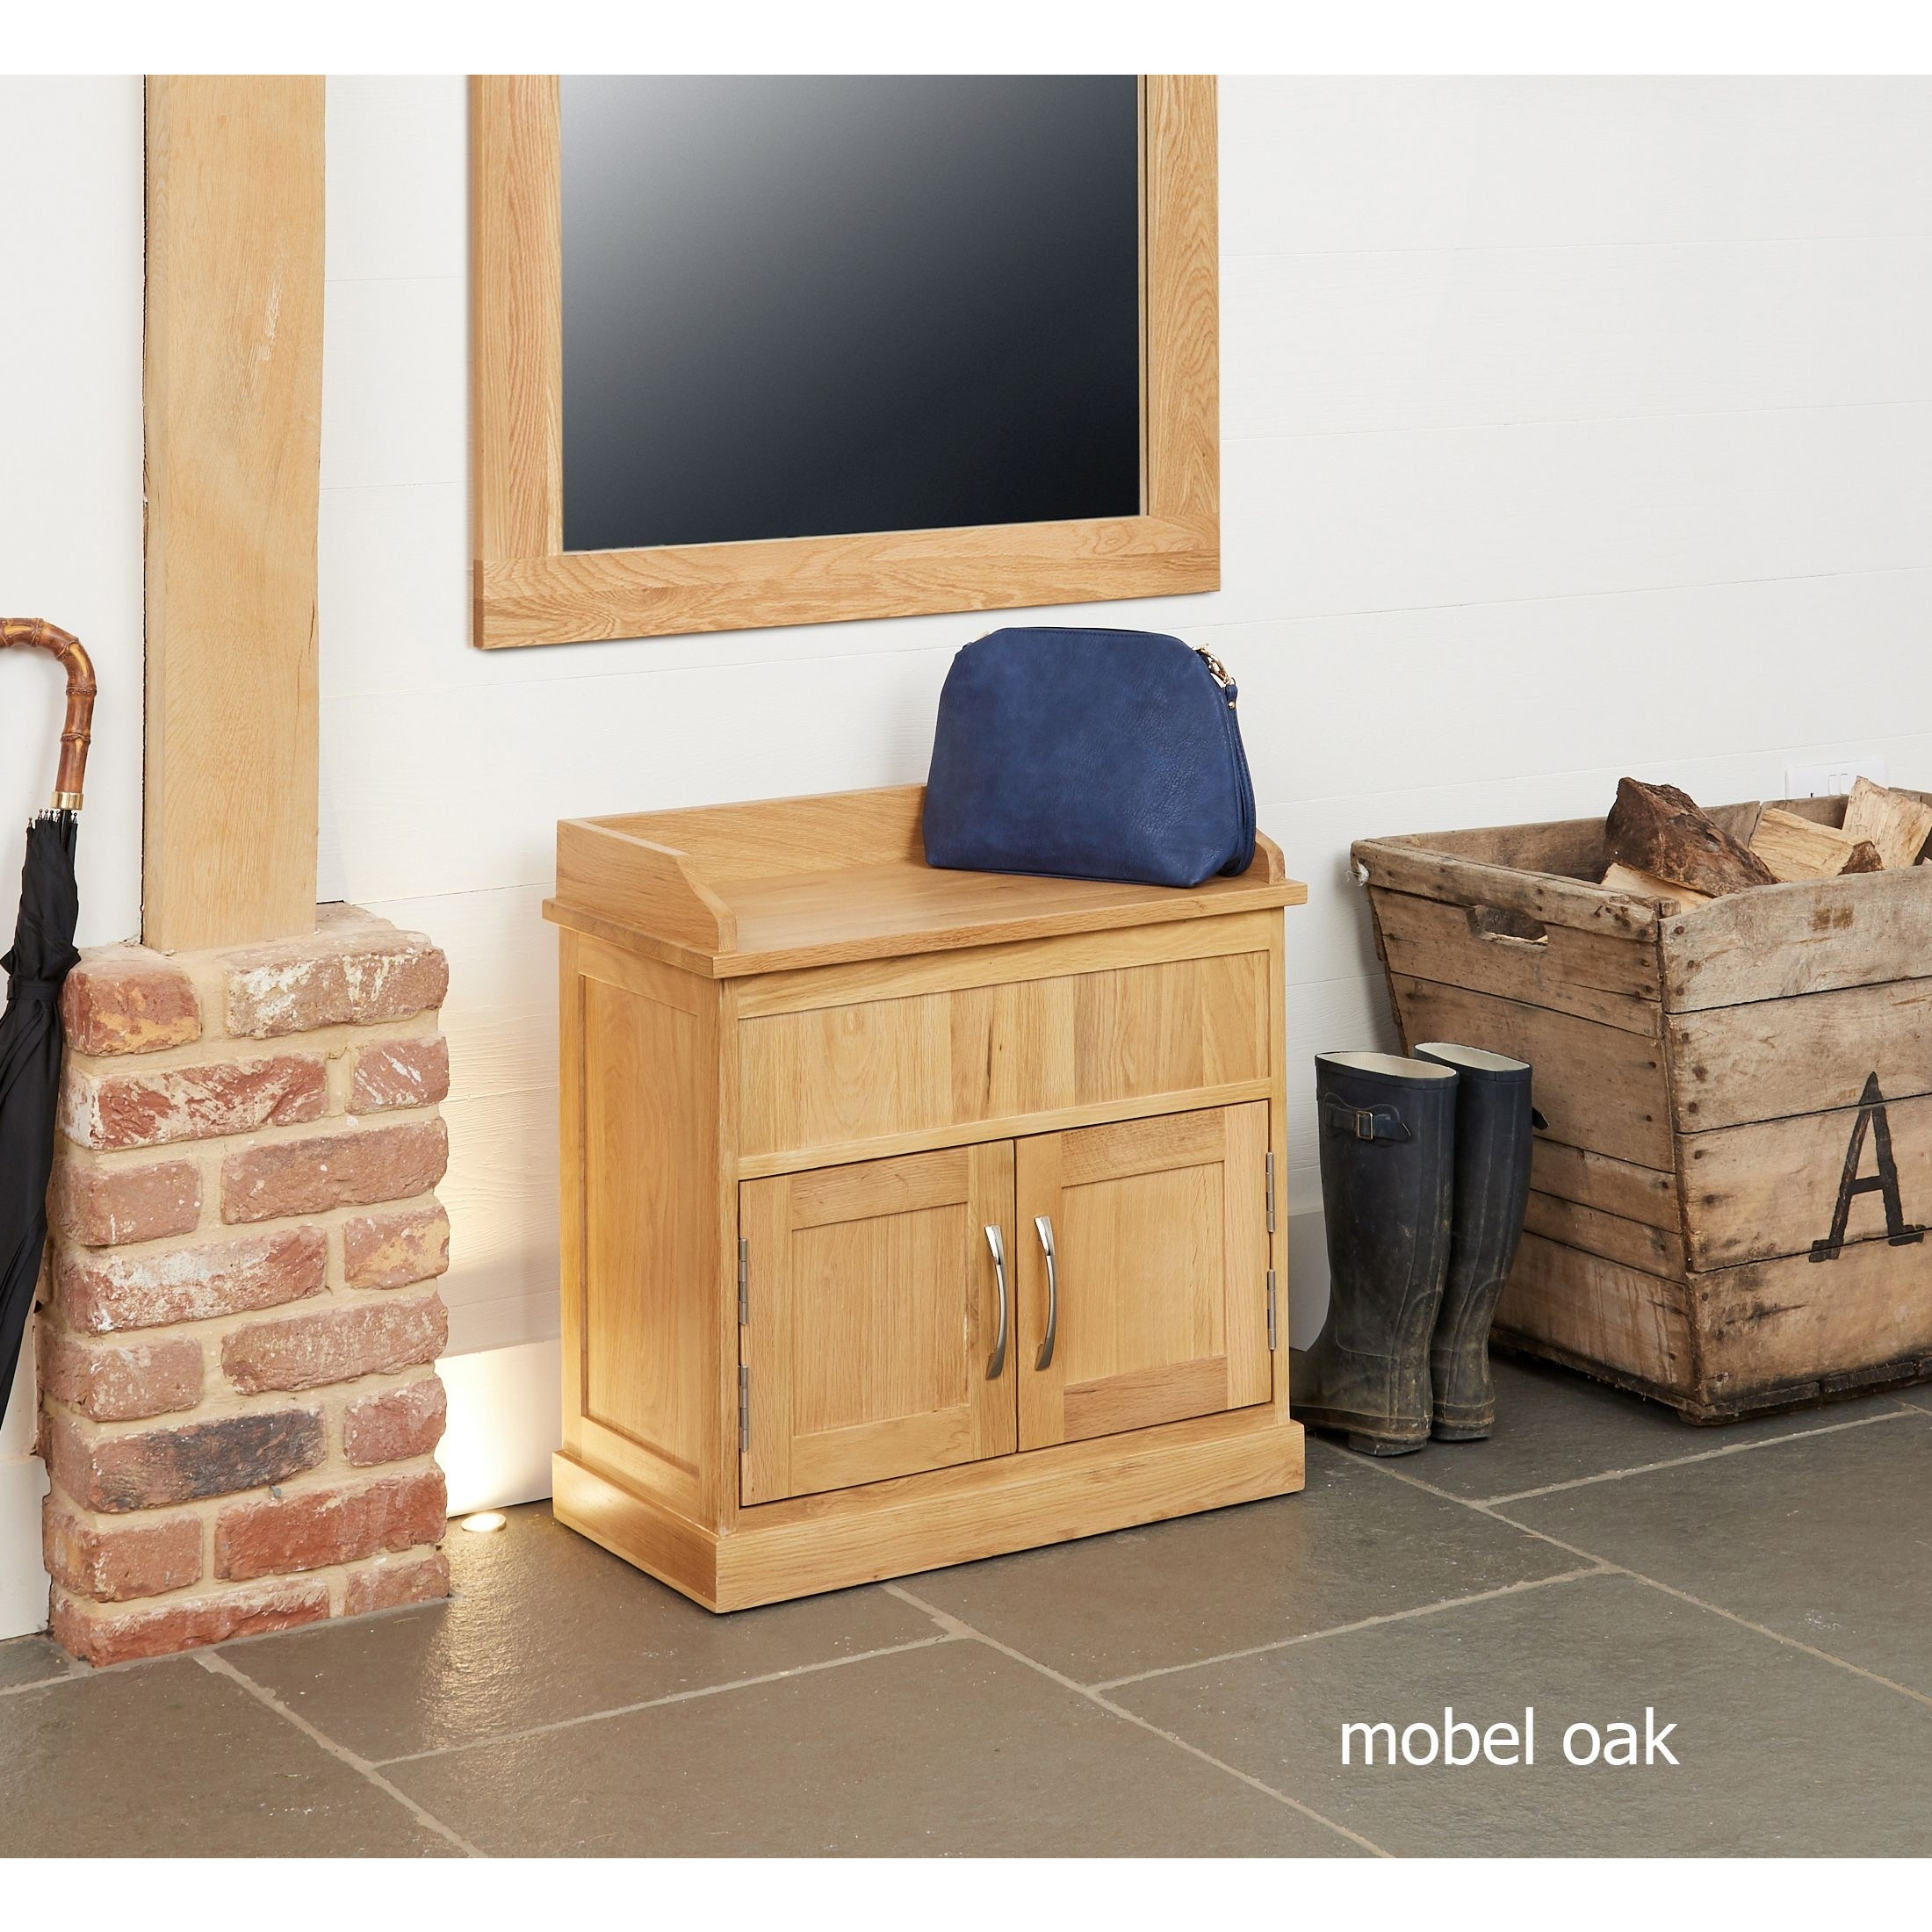 Mobel Solid Oak Hidden Storage Shoe Bench